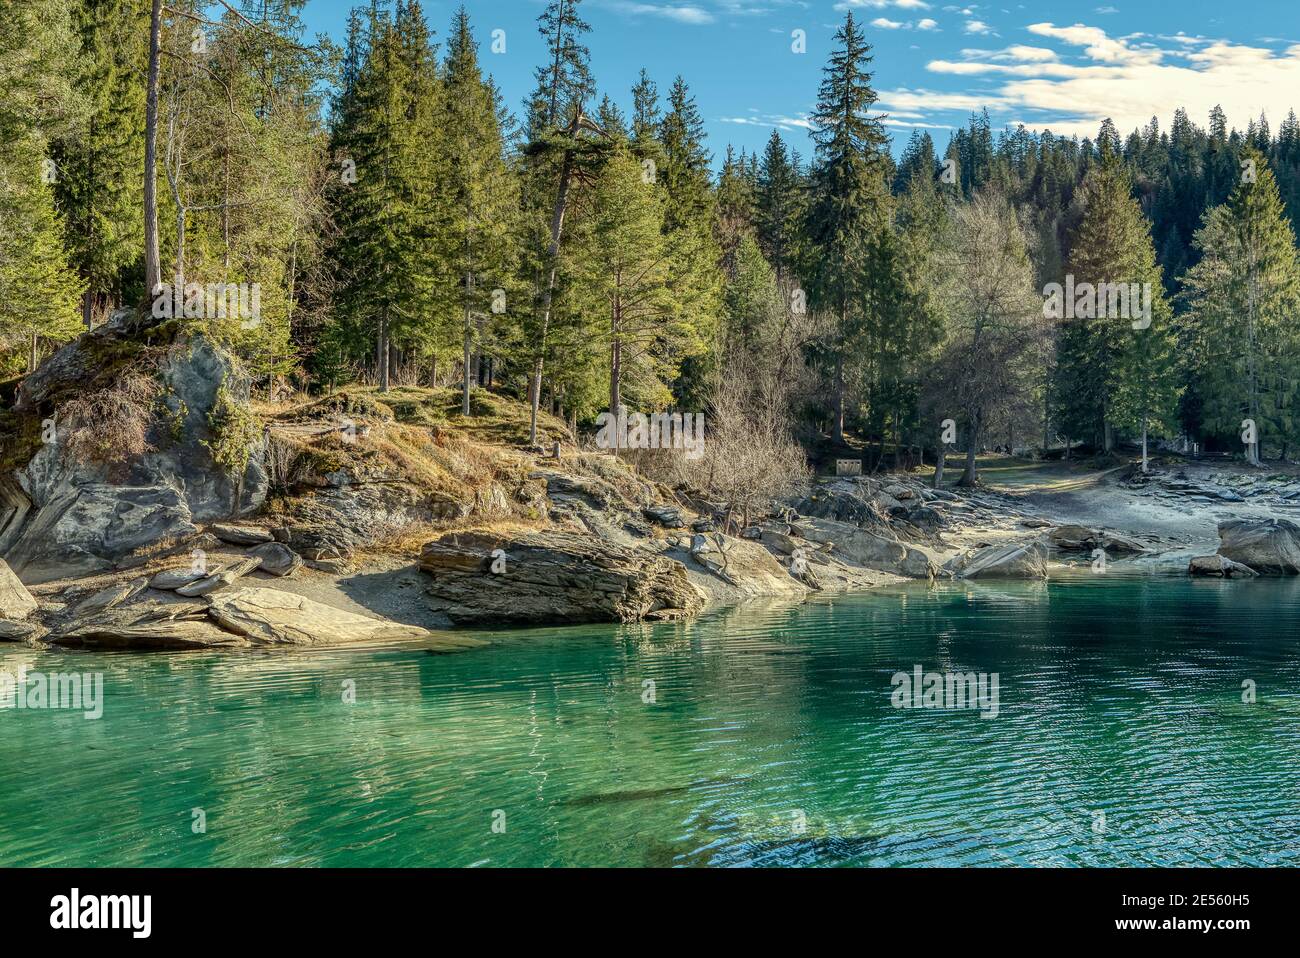 Belle scène de nature au lac de montagne Caumasee dans les Alpes suisses. Flims, Suisse Banque D'Images